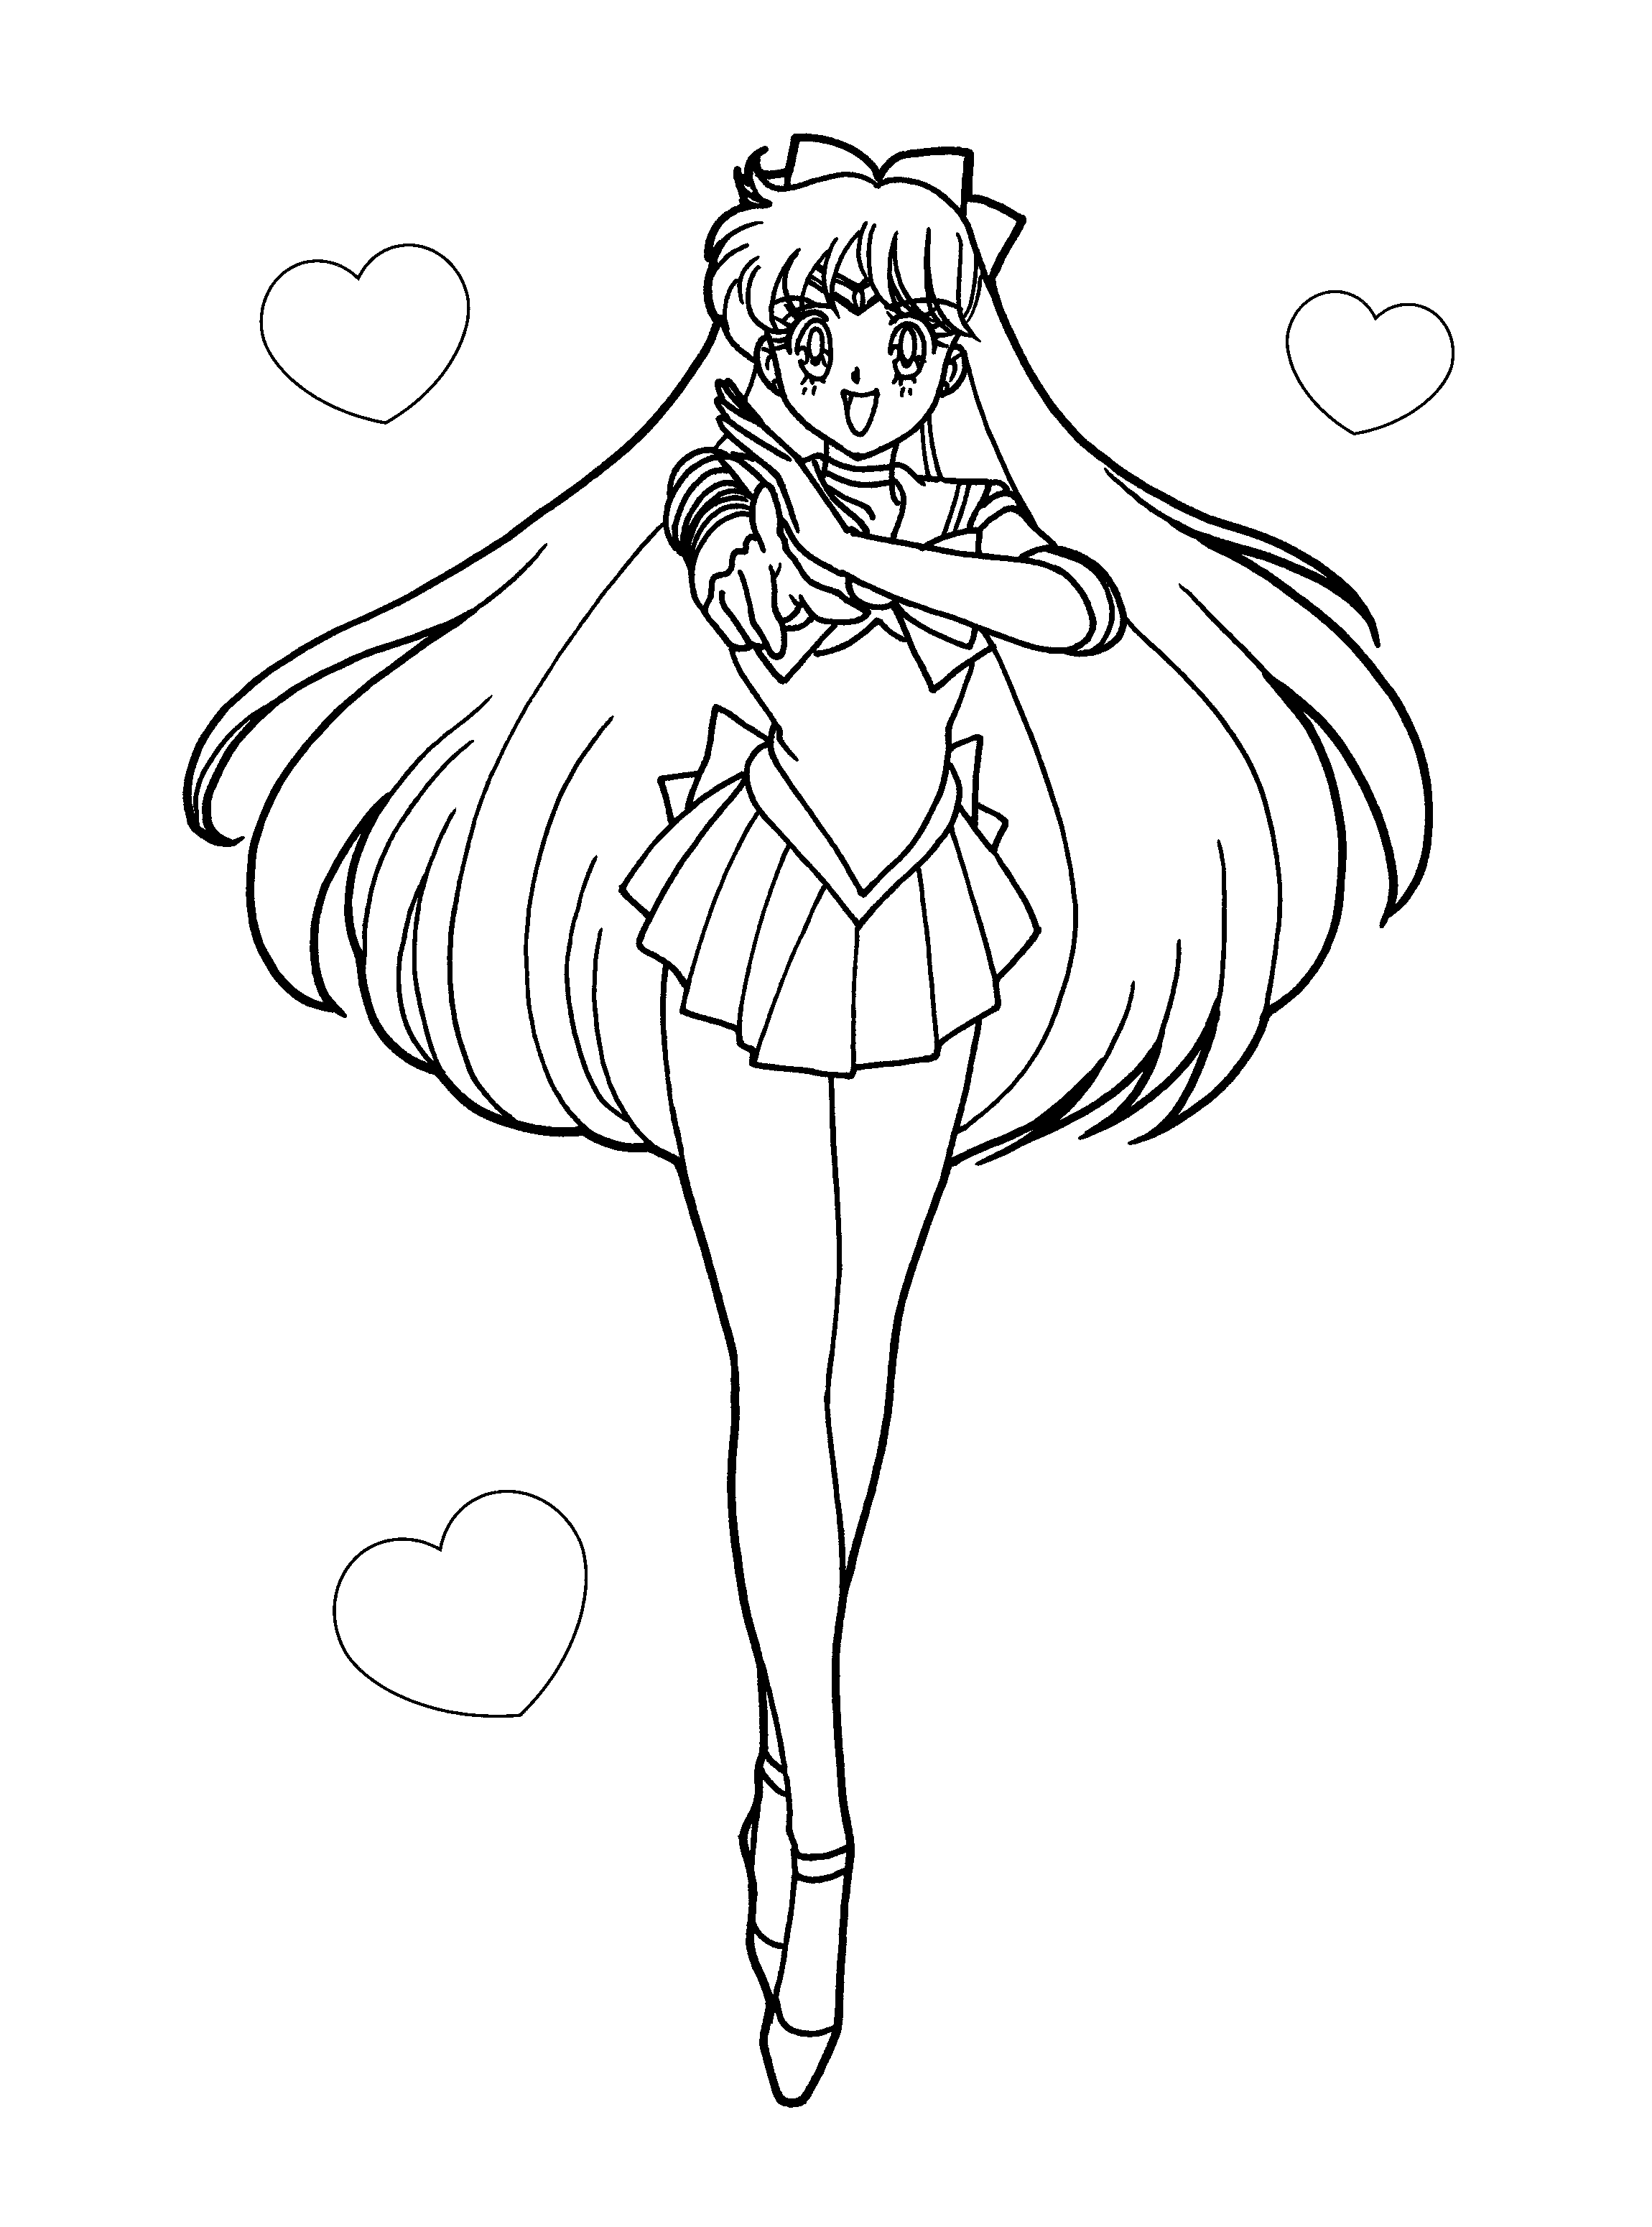 Sailor Venus coloring page